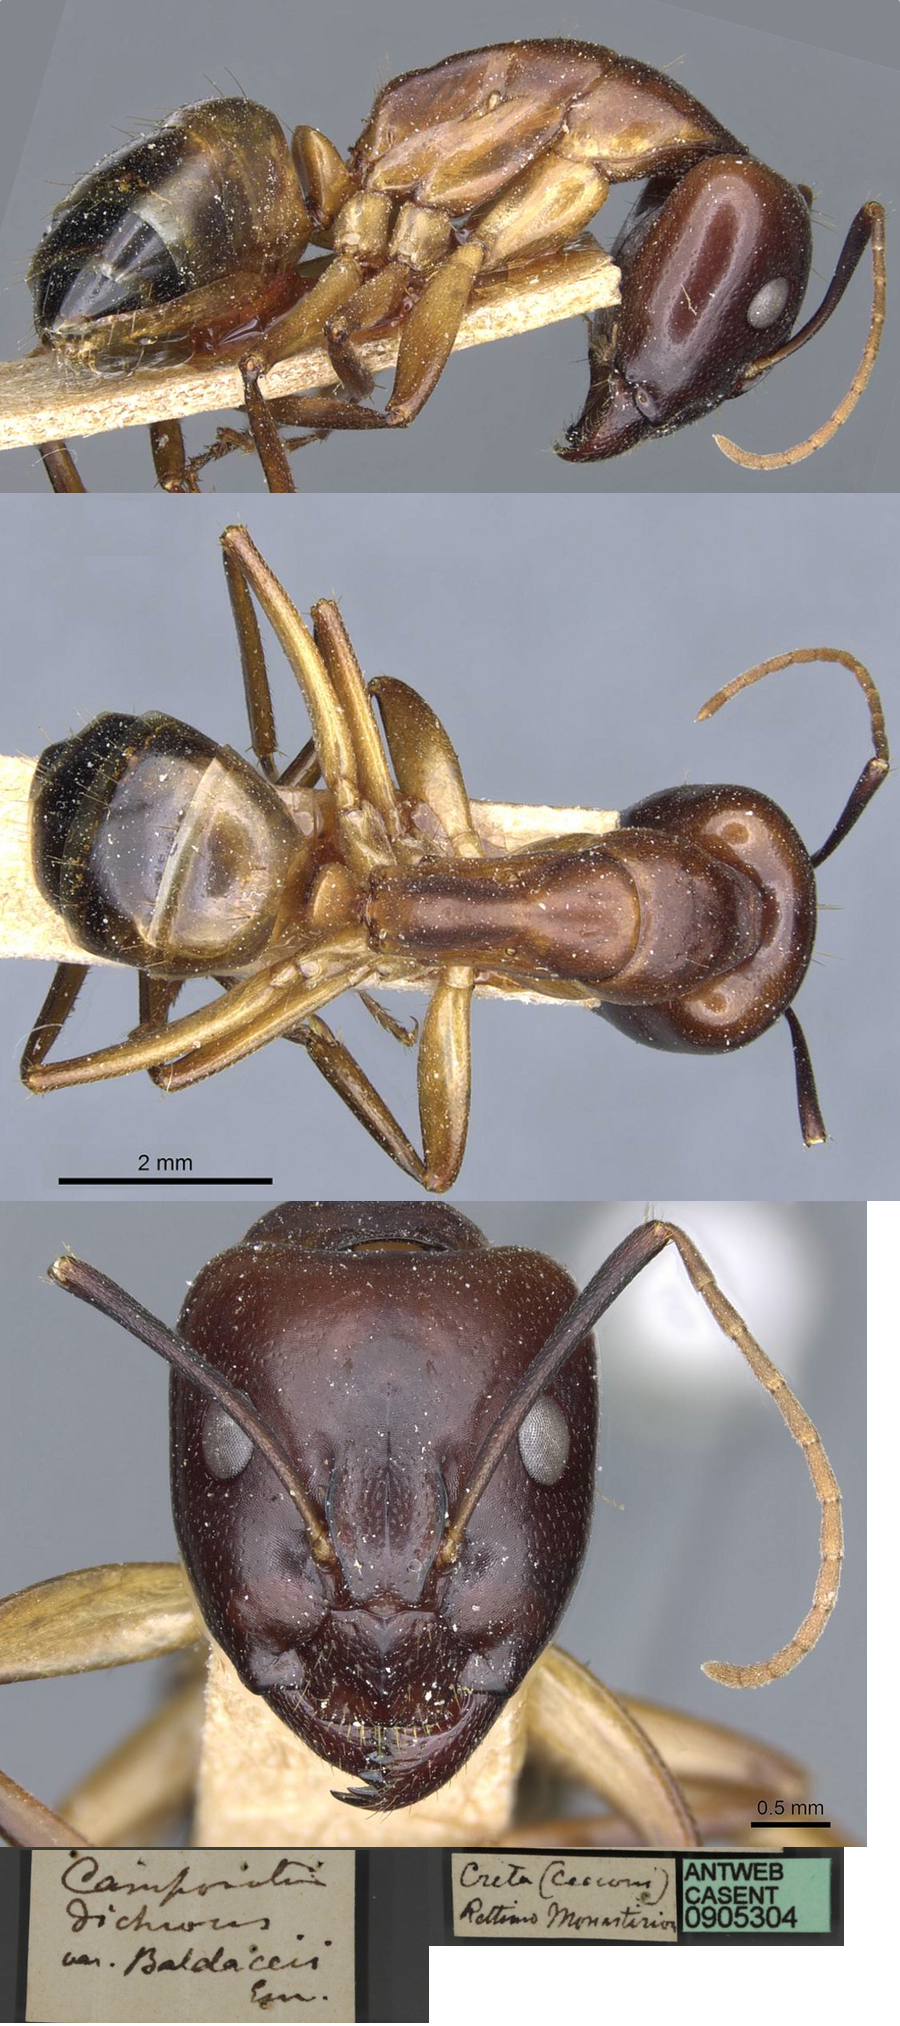 Camponotus baldaccii major